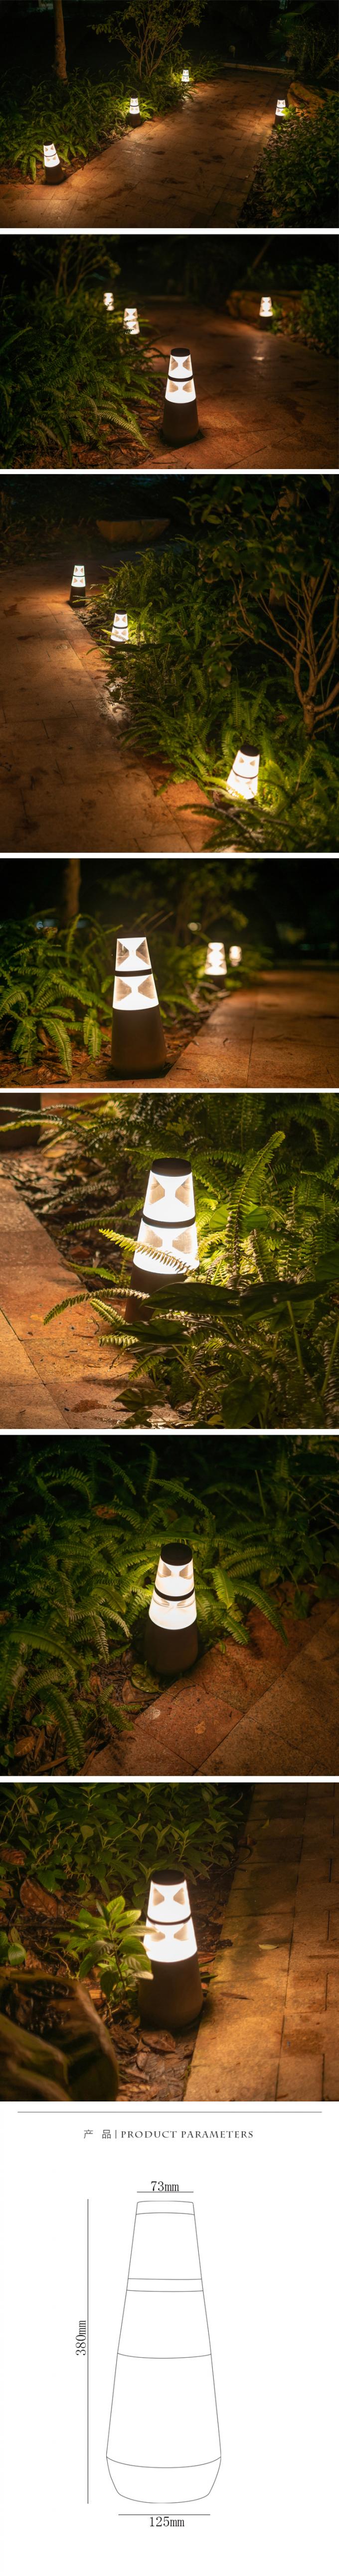 Aluminiumrasen-Lampen-Beleuchtungs-Art des wohnungs-Garten-LED im Freien gegründet